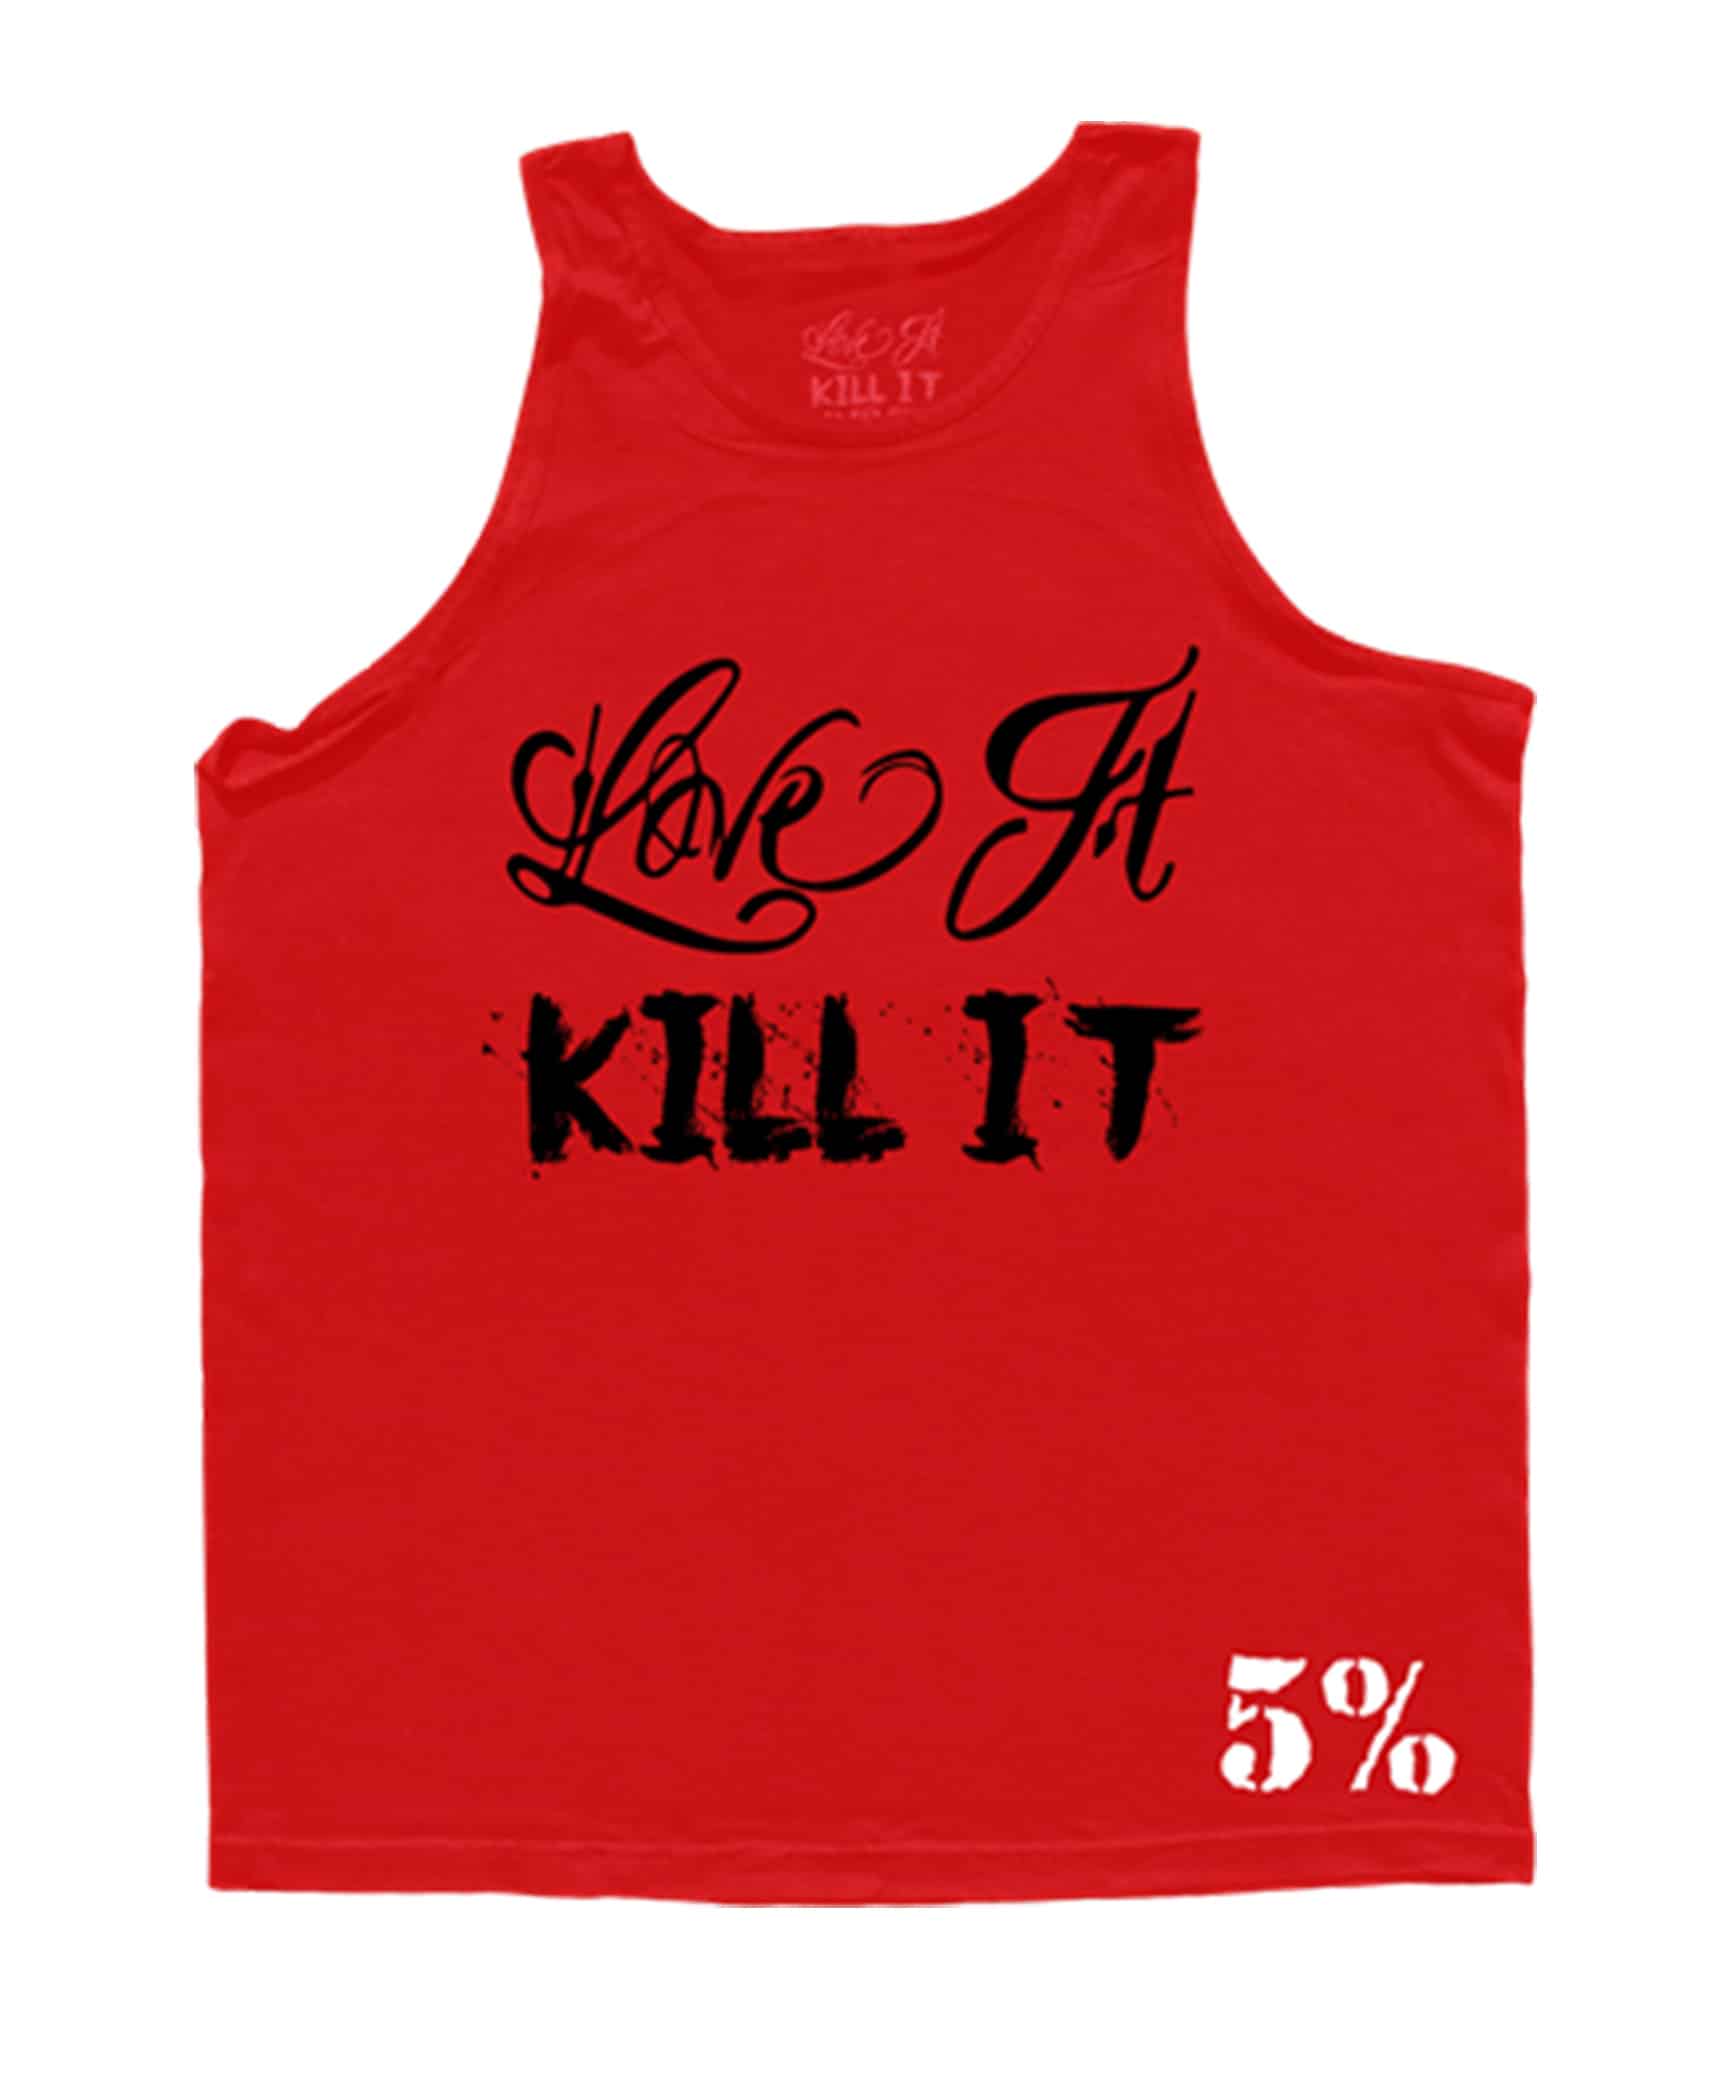 P1 harmony killin it. Kill it футболка. 5 Рич Пиана Kill it. Kill it 5 одежда. It одежда.